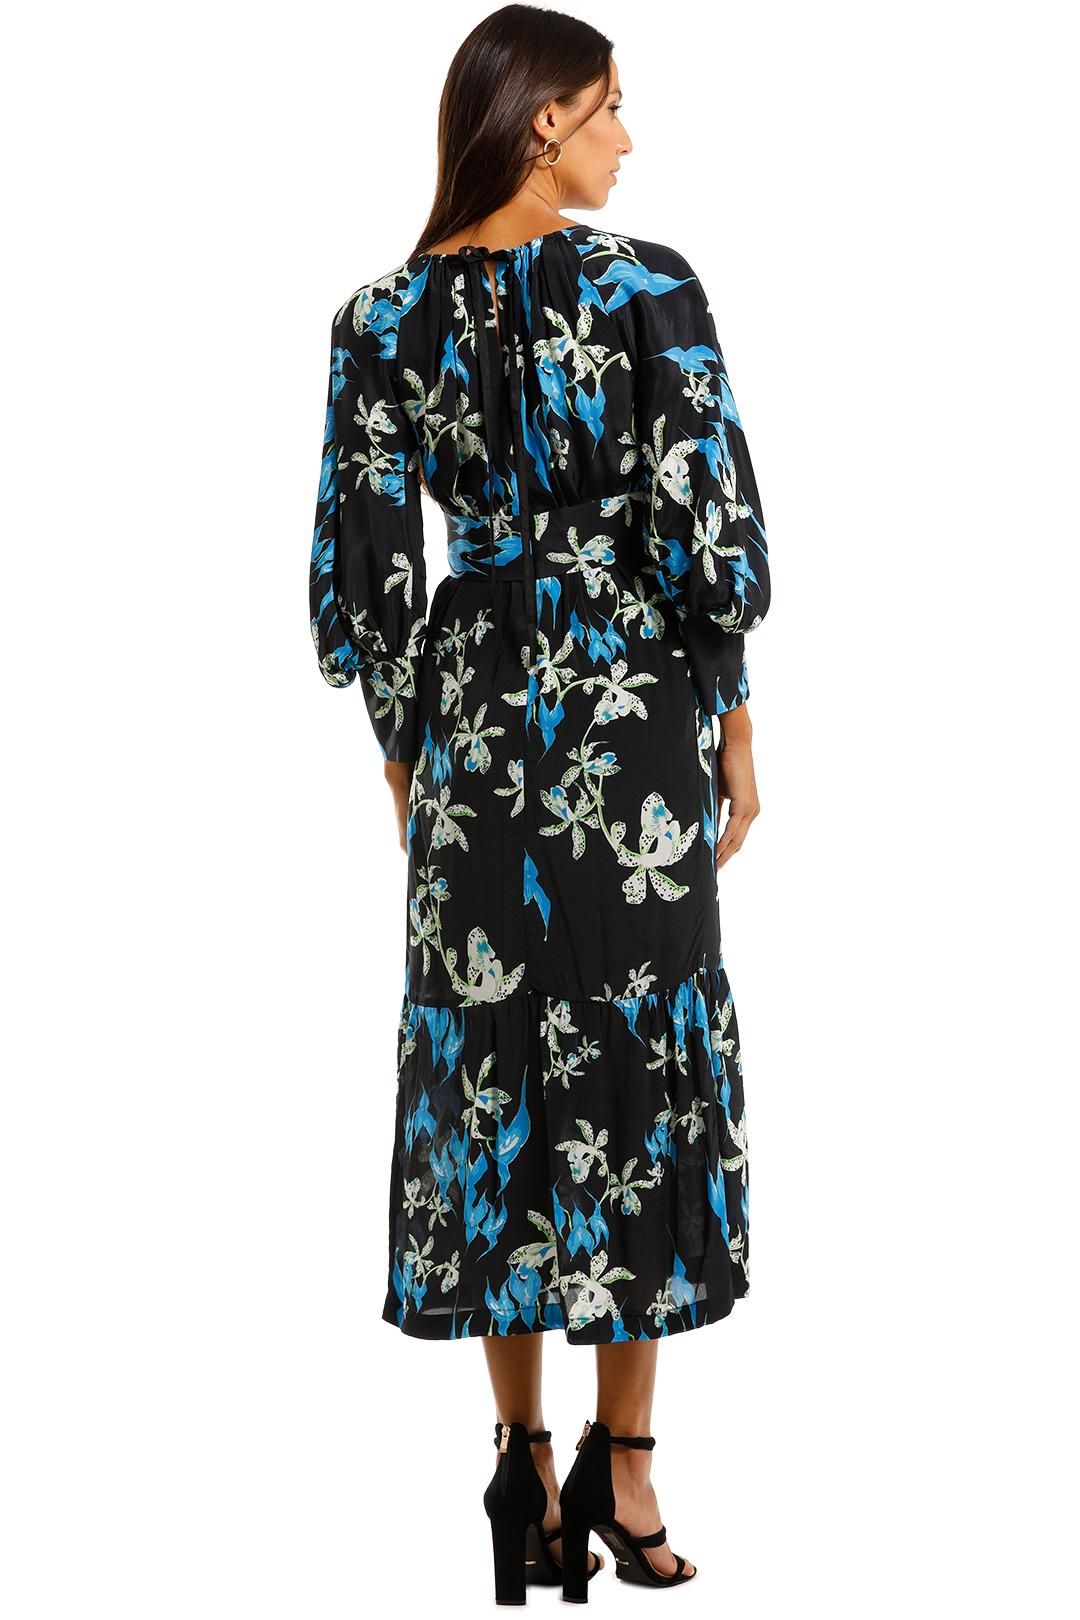 KITX Restoration Blue Midi Dress Floral Print Long Sleeve